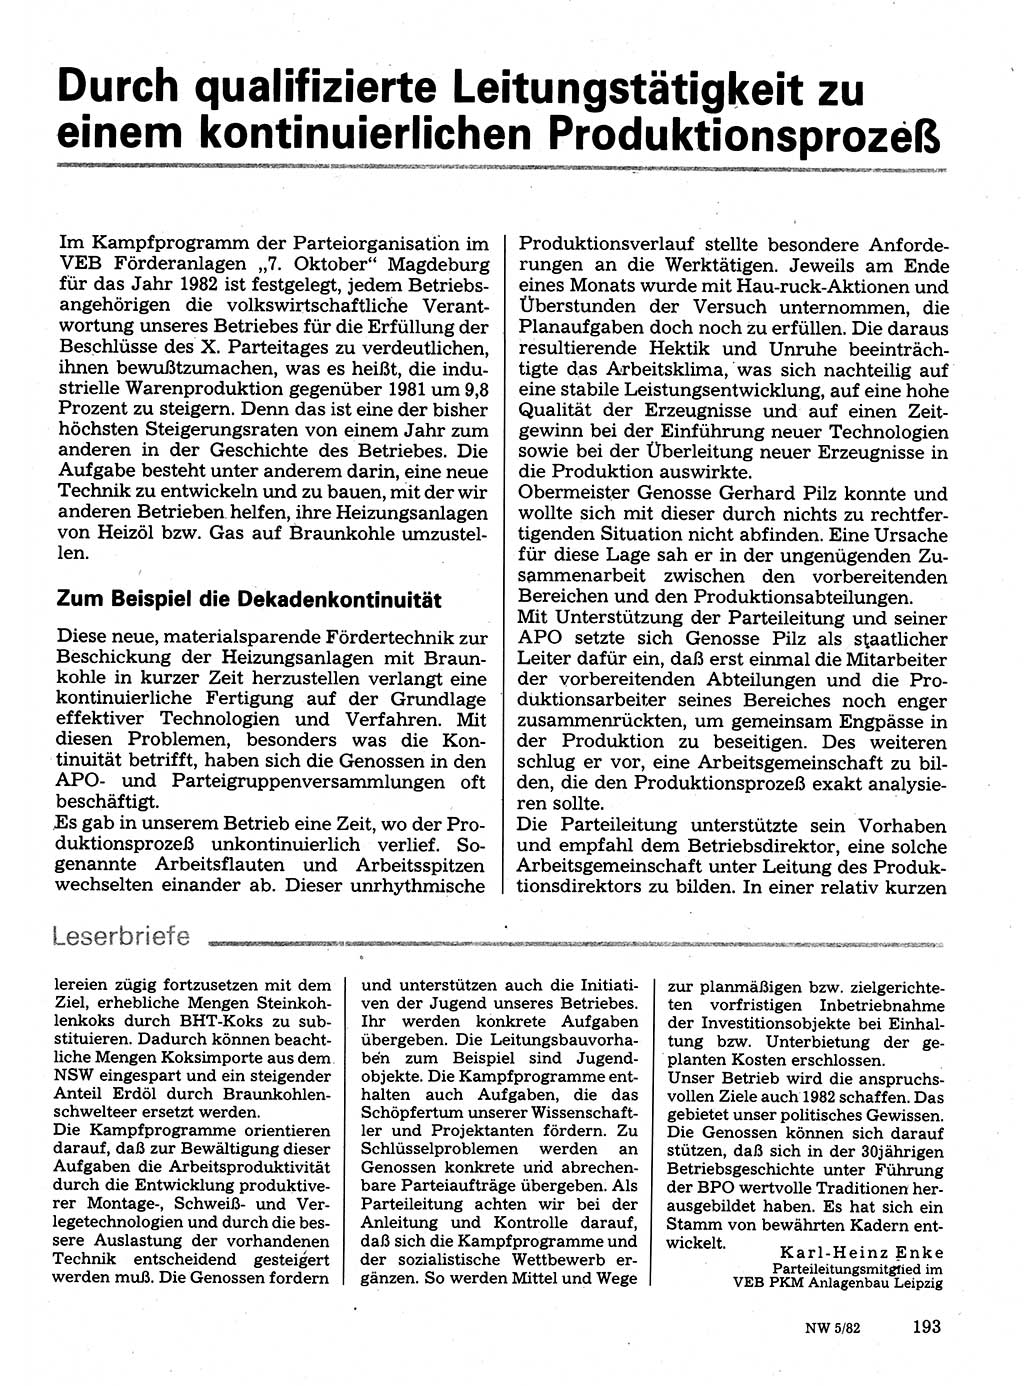 Neuer Weg (NW), Organ des Zentralkomitees (ZK) der SED (Sozialistische Einheitspartei Deutschlands) für Fragen des Parteilebens, 37. Jahrgang [Deutsche Demokratische Republik (DDR)] 1982, Seite 193 (NW ZK SED DDR 1982, S. 193)